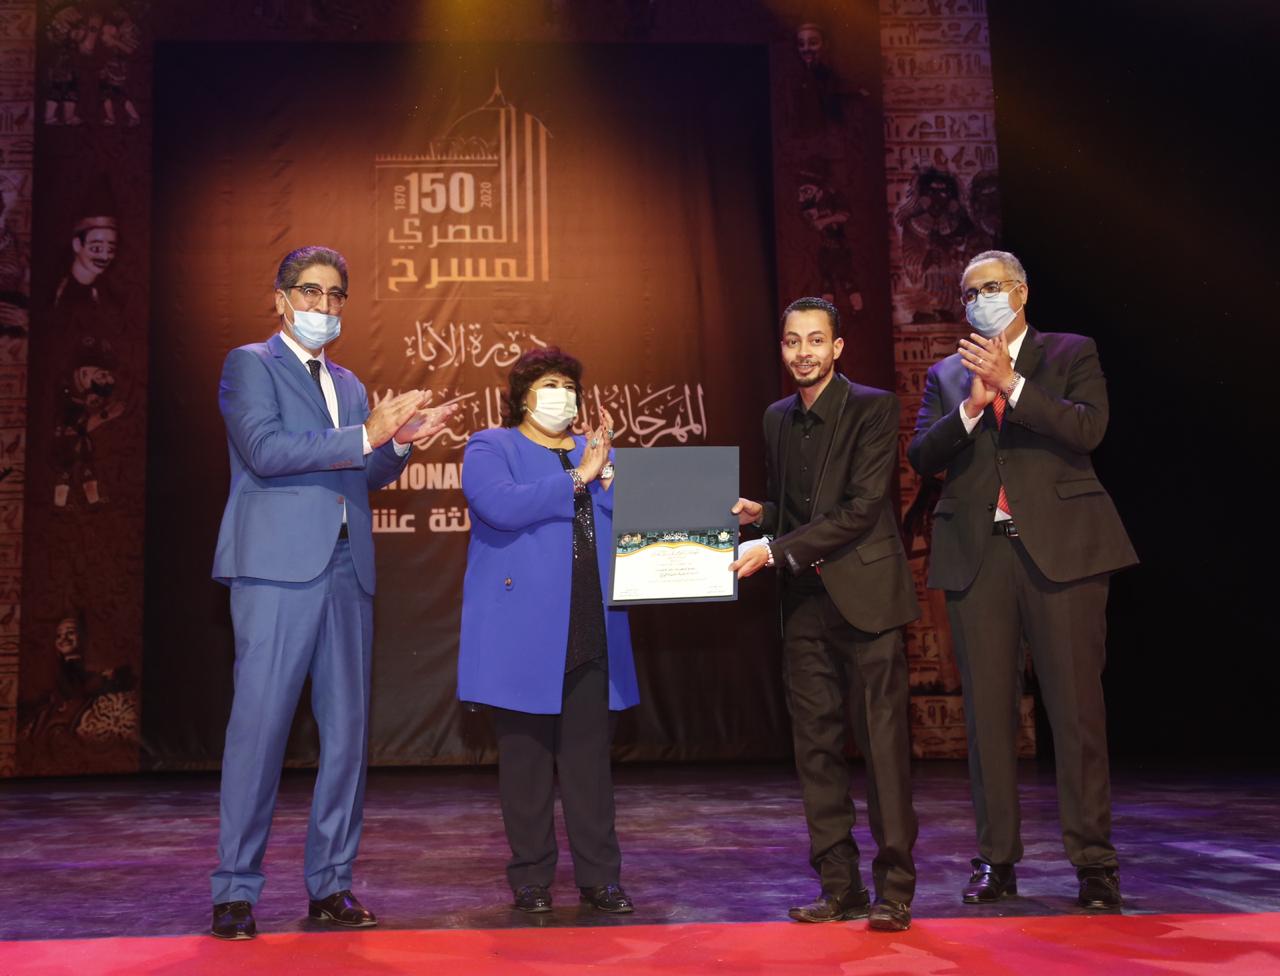   وزيرة الثقافة تسلم جوائز المهرجان القومى للمسرح المصرى